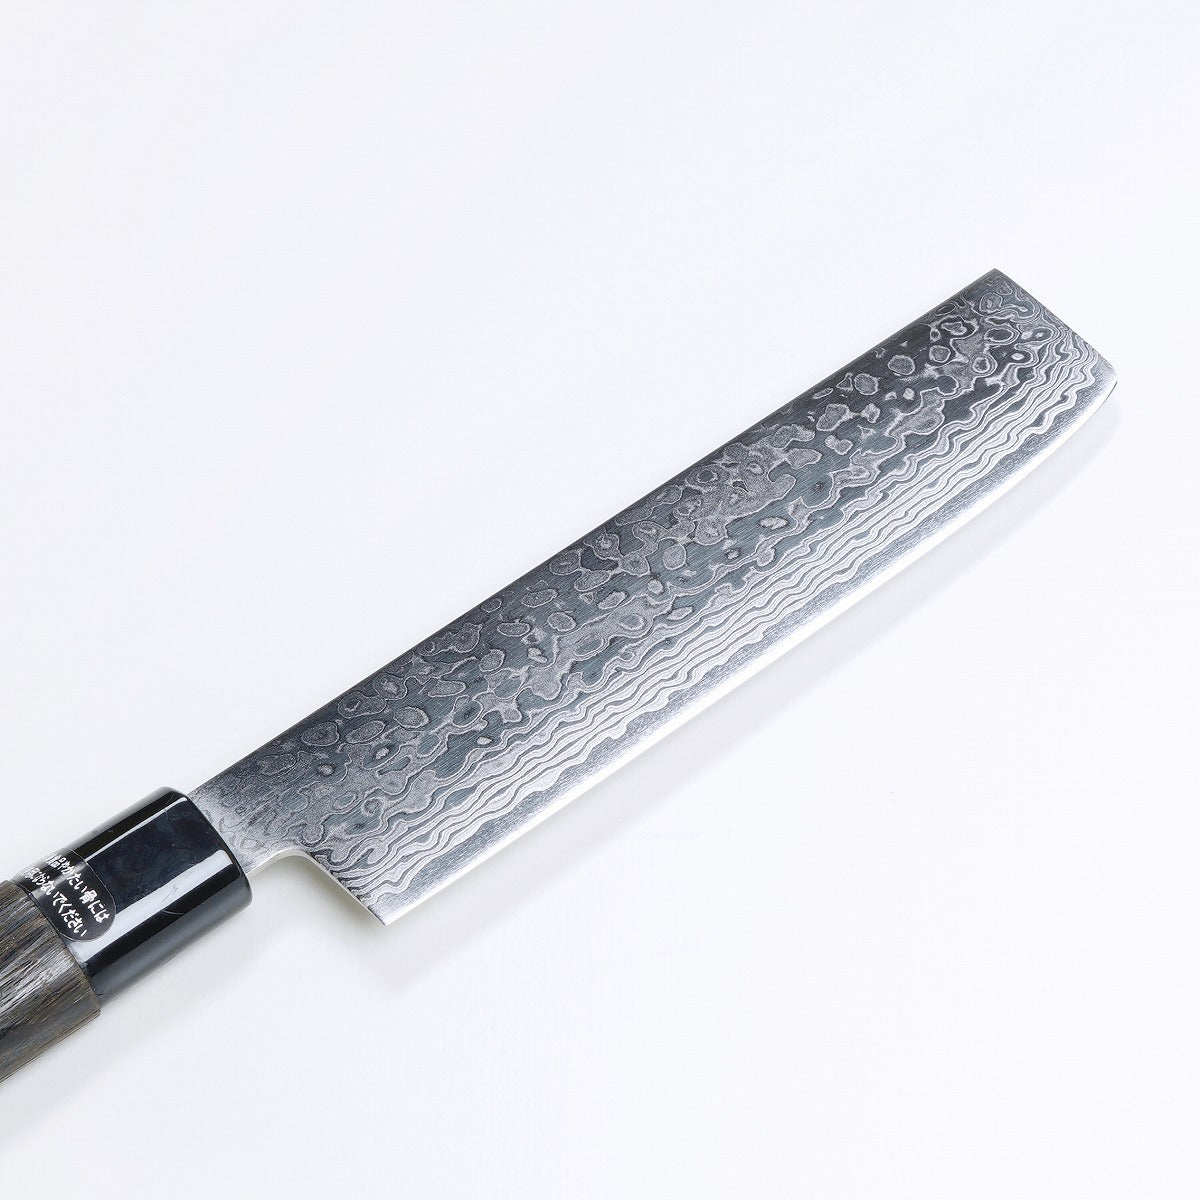 菜刀 ZA18積層鋼 墨流模樣, 165mm